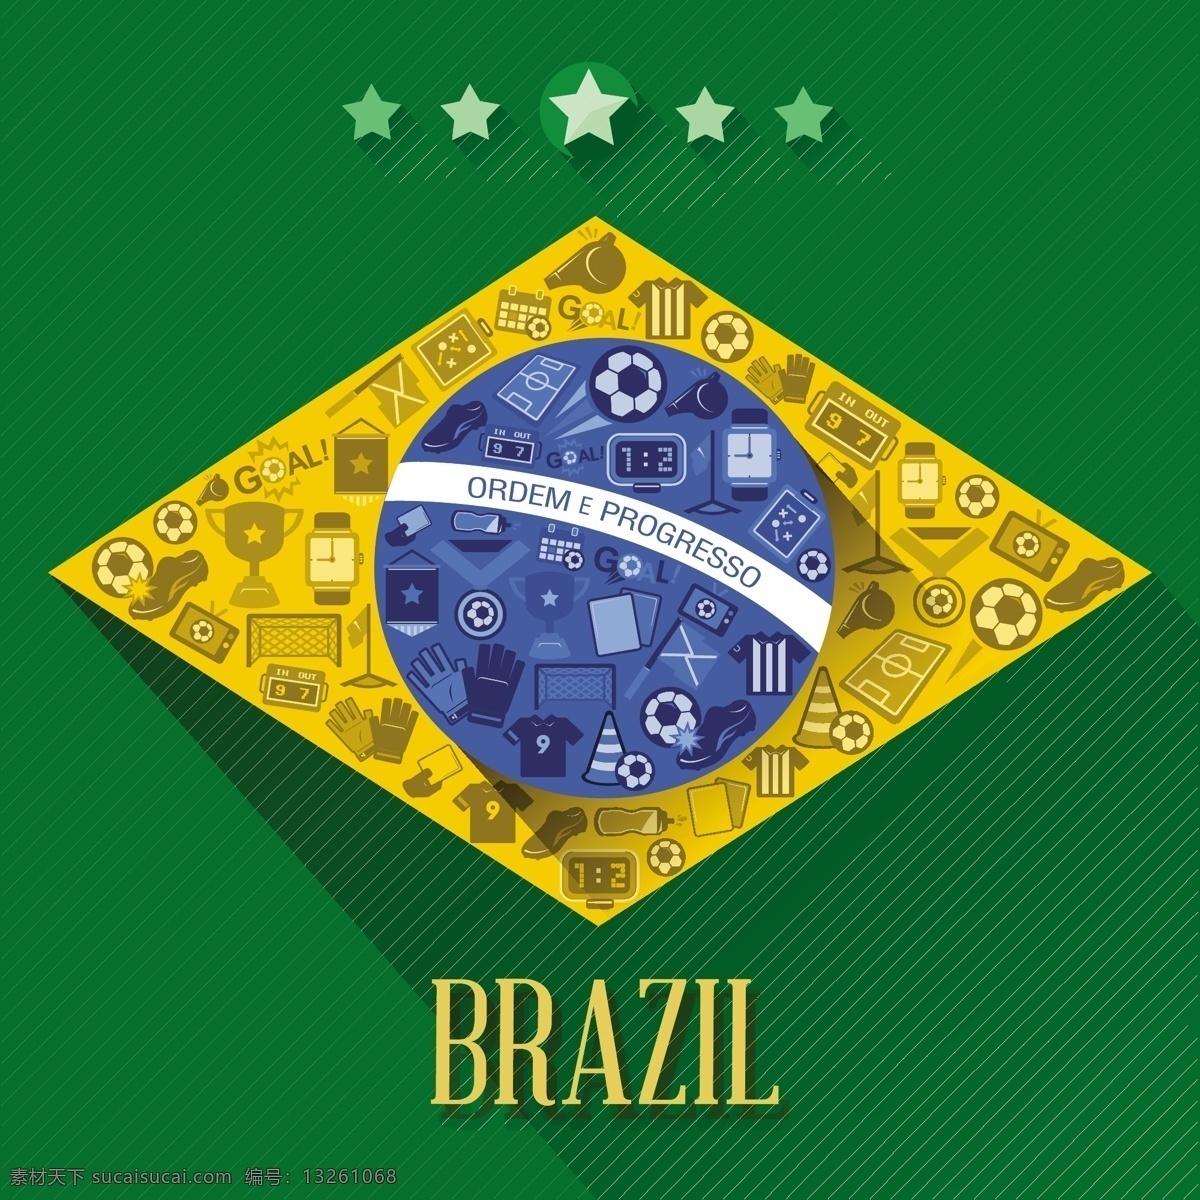 世界杯 标志 海报 模板下载 巴西 背景 足球 体育运动 生活百科 矢量素材 绿色